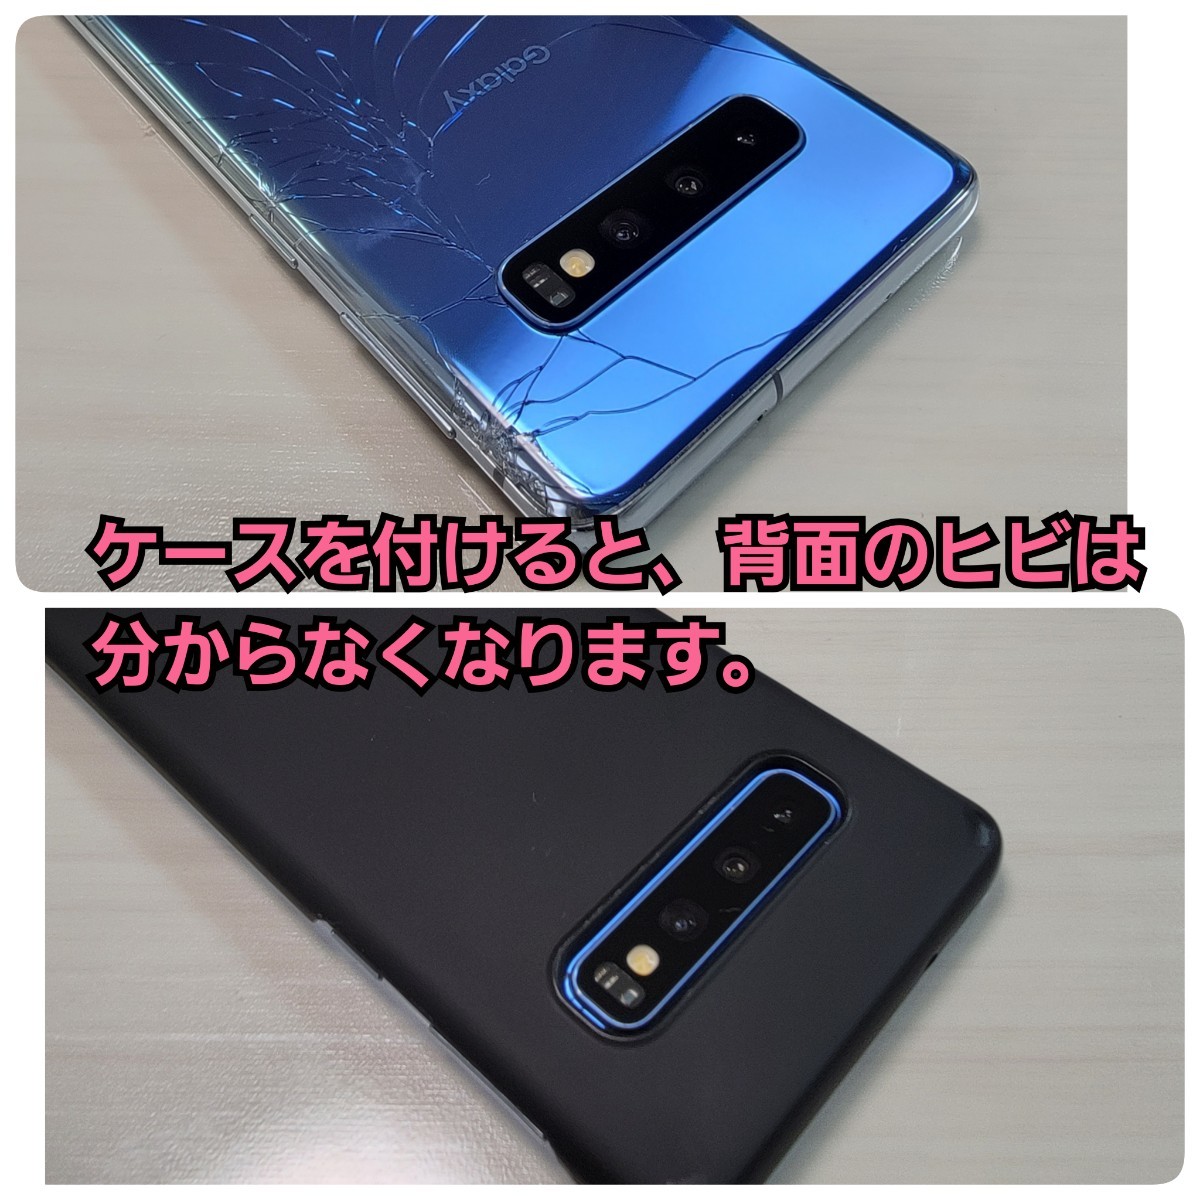 Samsung　Galaxy S10　Prism blue　SIMフリー　楽天モバイル版　おサイフケータイ　端末代金残債無し